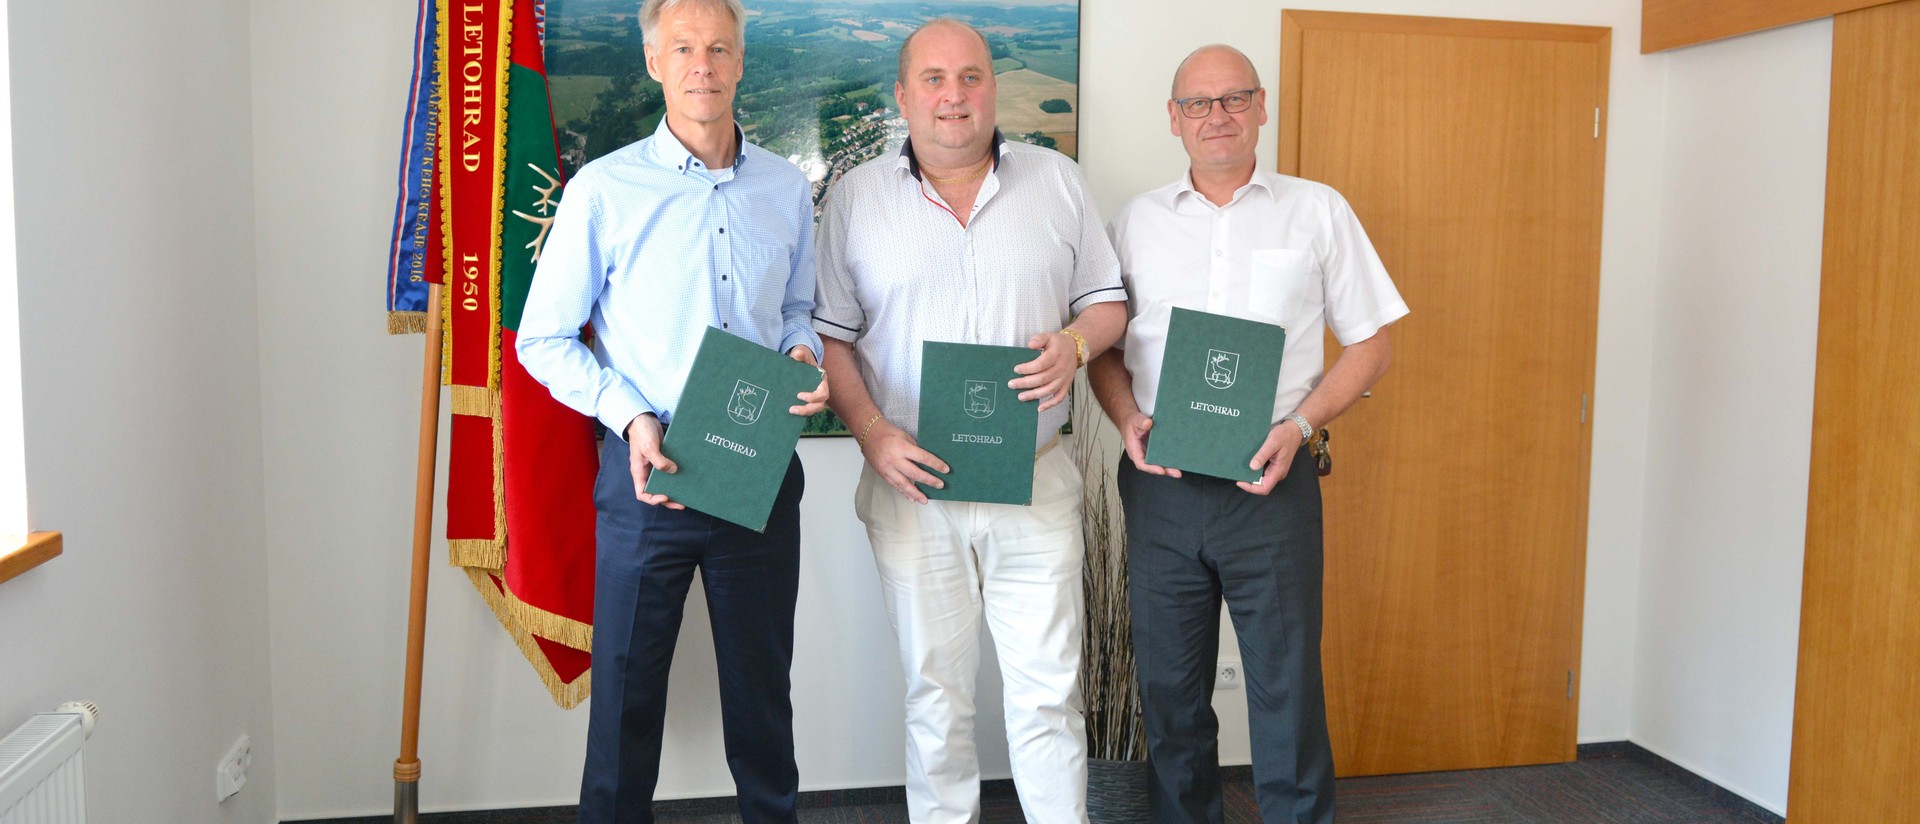 zleva: Franz Girshick, finanční ředitel OEZ s.r.o., Petr Fiala, starosta města Letohrad a Roman Schiffer, generální ředitel OEZ s.r.o.